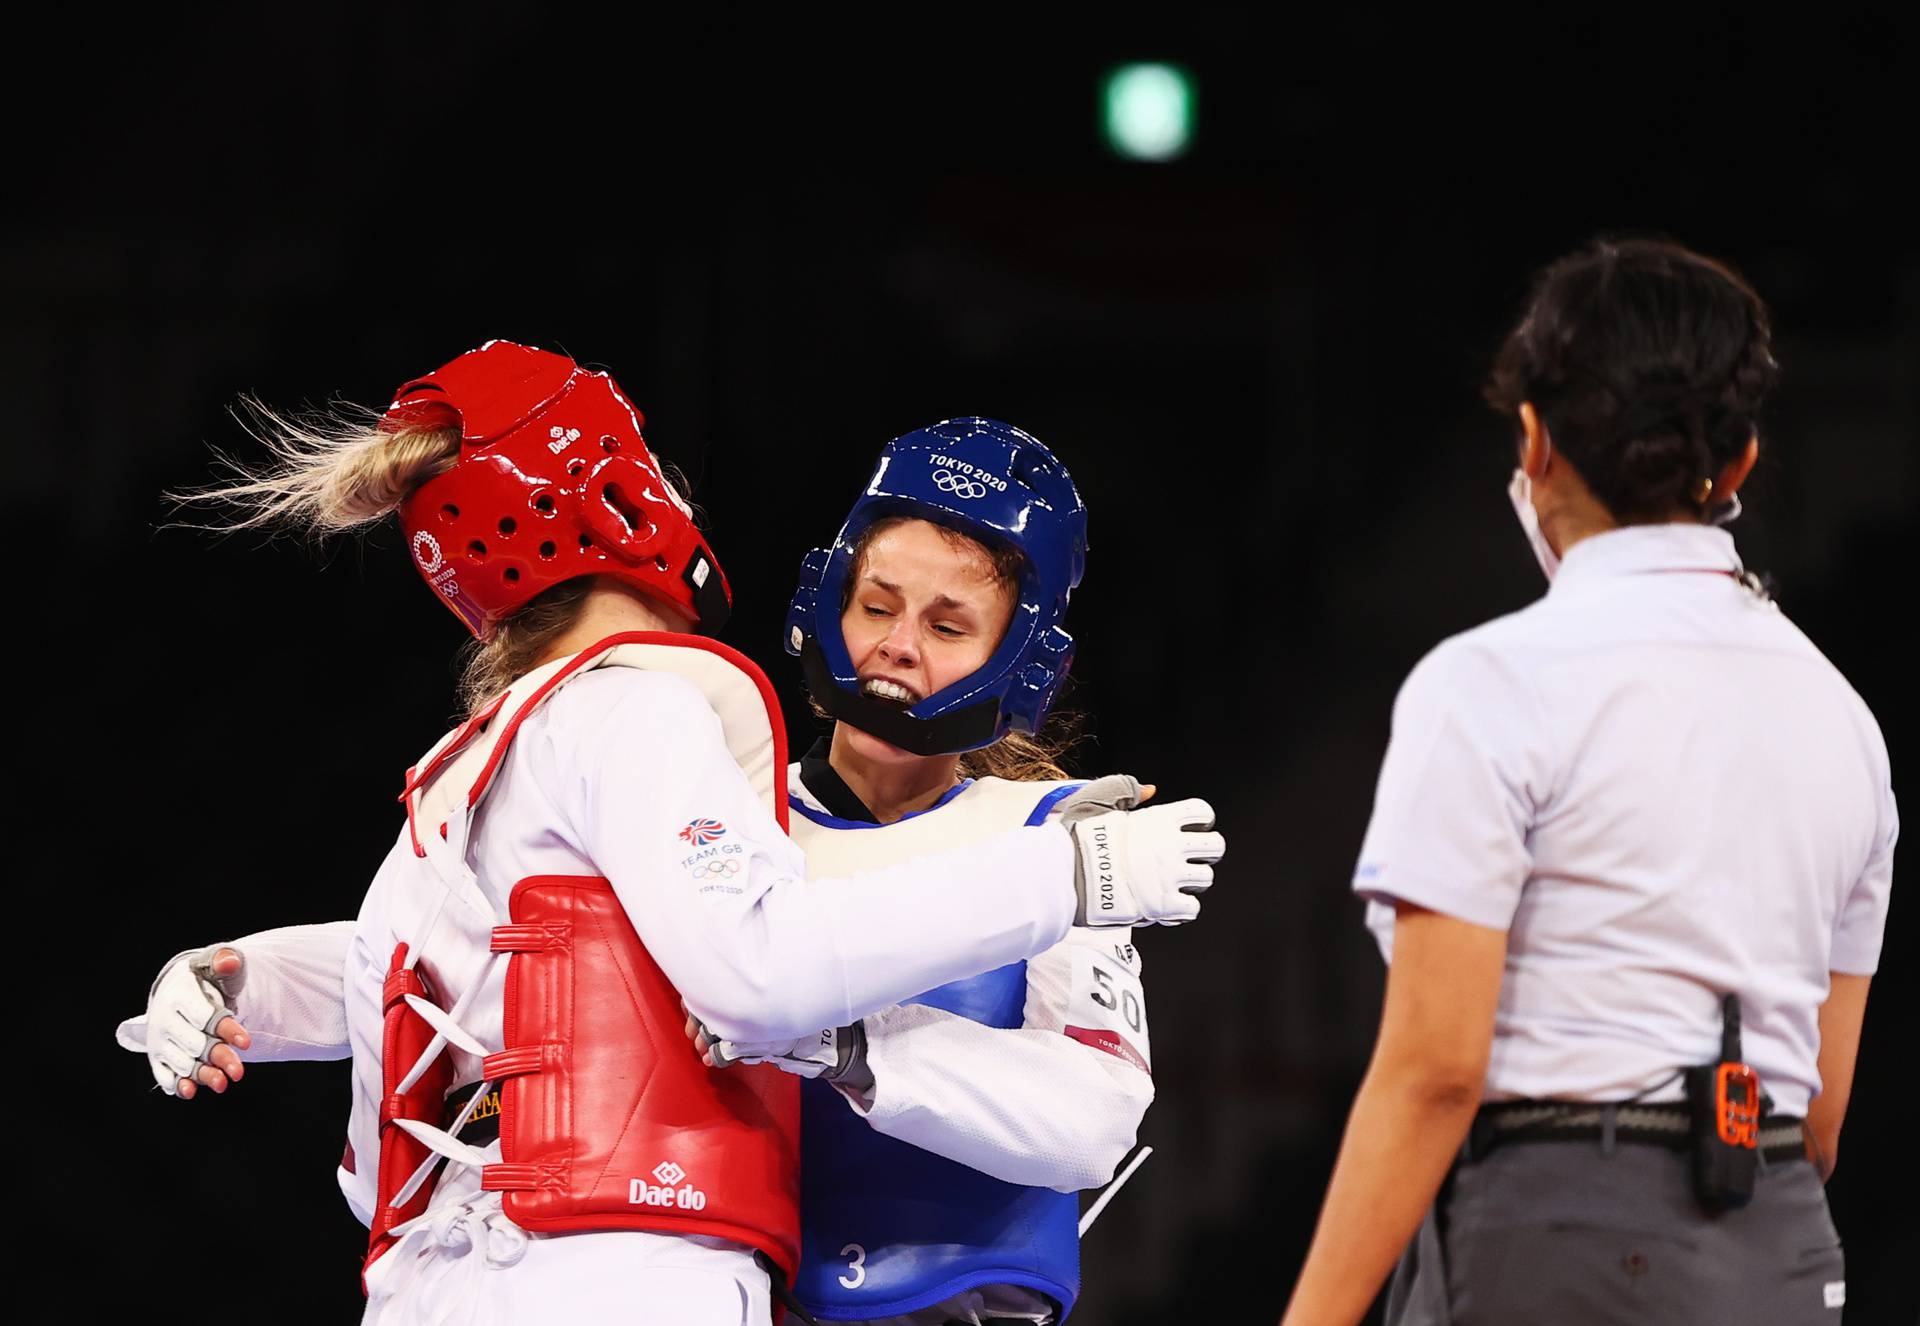 Taekwondo - Women's Welterweight 57-67kg - Gold medal match